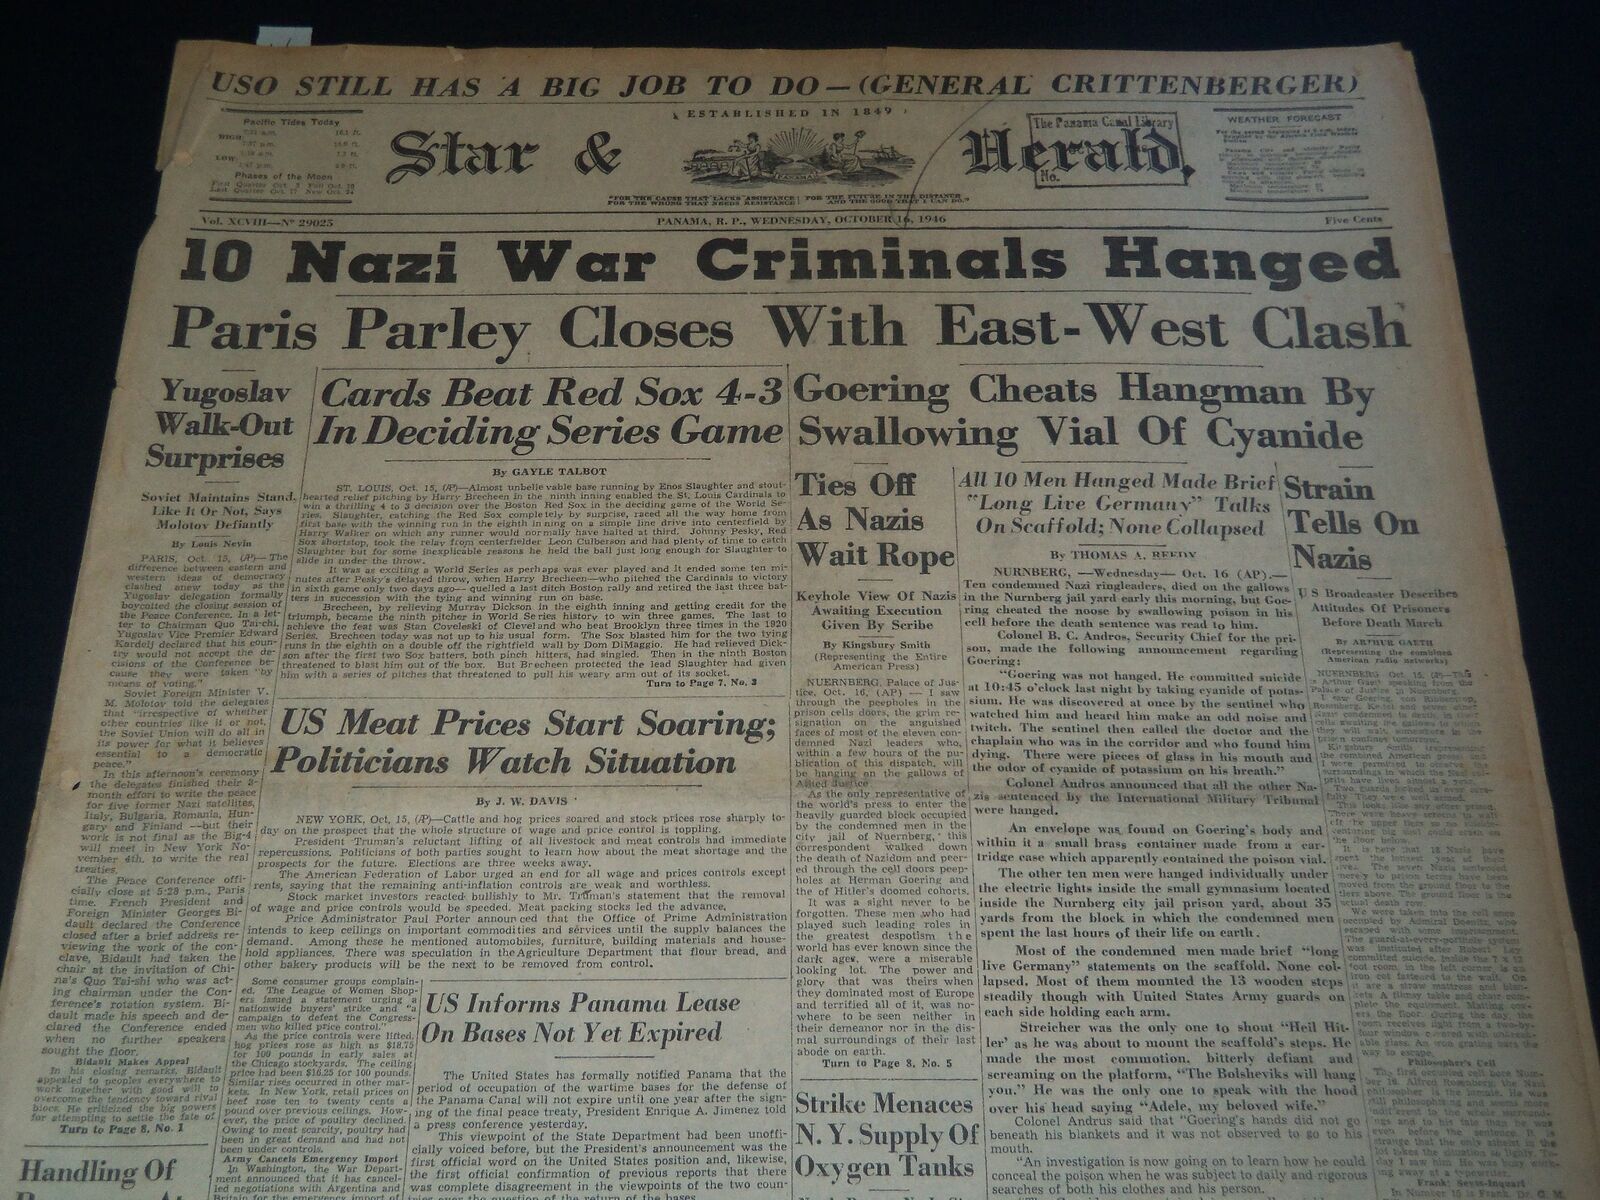 1946 OCTOBER 16 PANAMA STAR & HERALD NEWSPAPER - 10 NAZIS HANGED - NT 7535